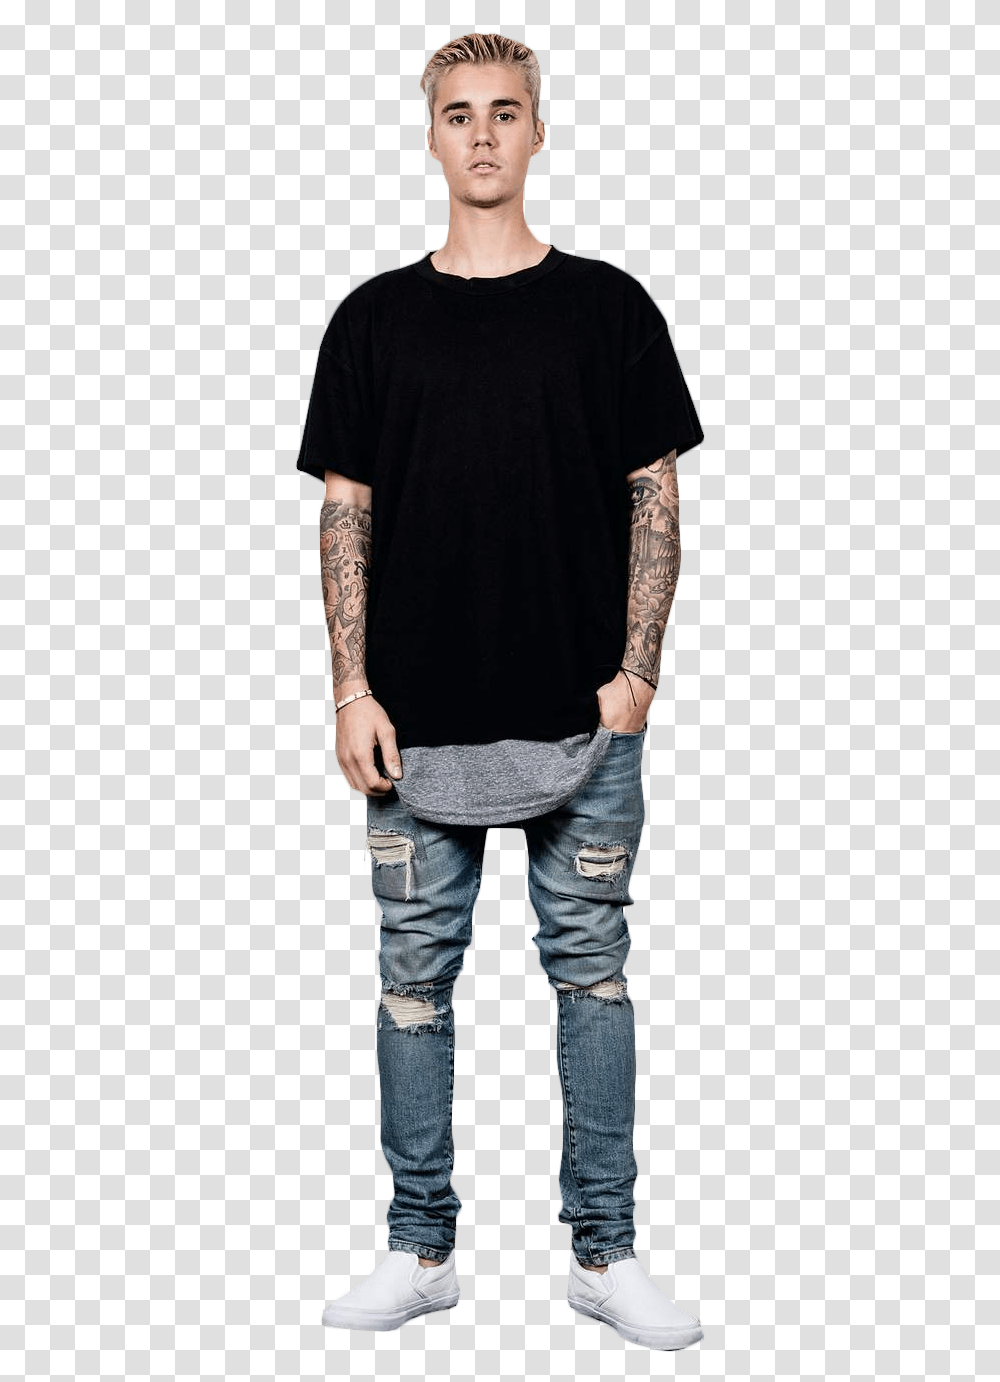 Justin Bieber Standing Vans Justin Bieber Outfits, Skin, Apparel, Sleeve Transparent Png